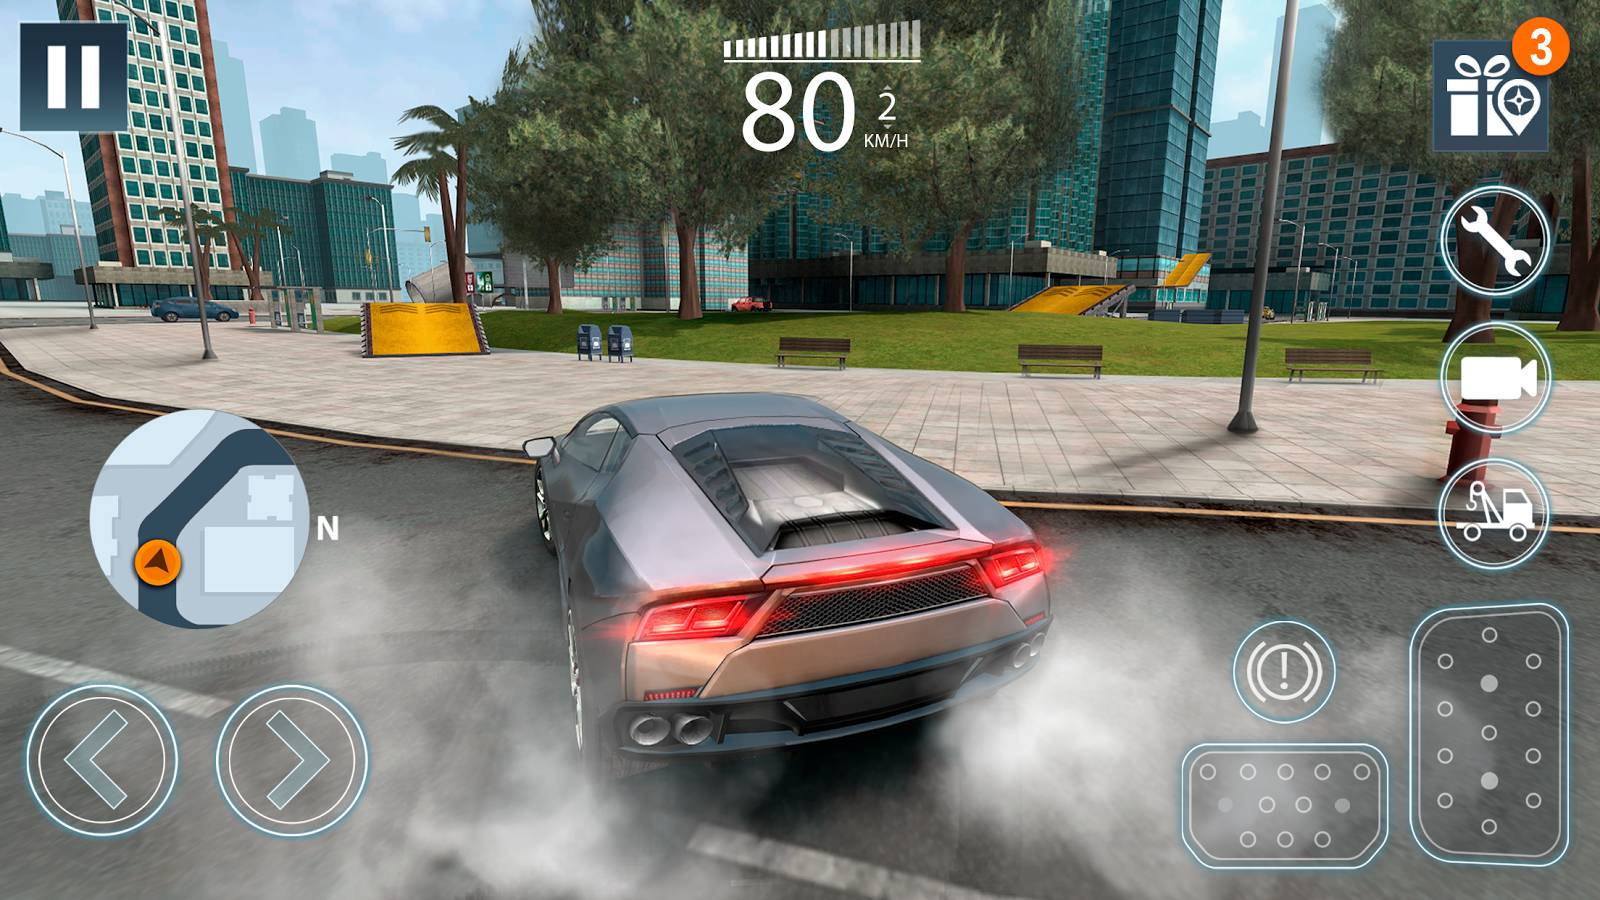 extreme car driving simulator 2 5 2 2p1 para hileli mod apk indir apk dayi android apk indir